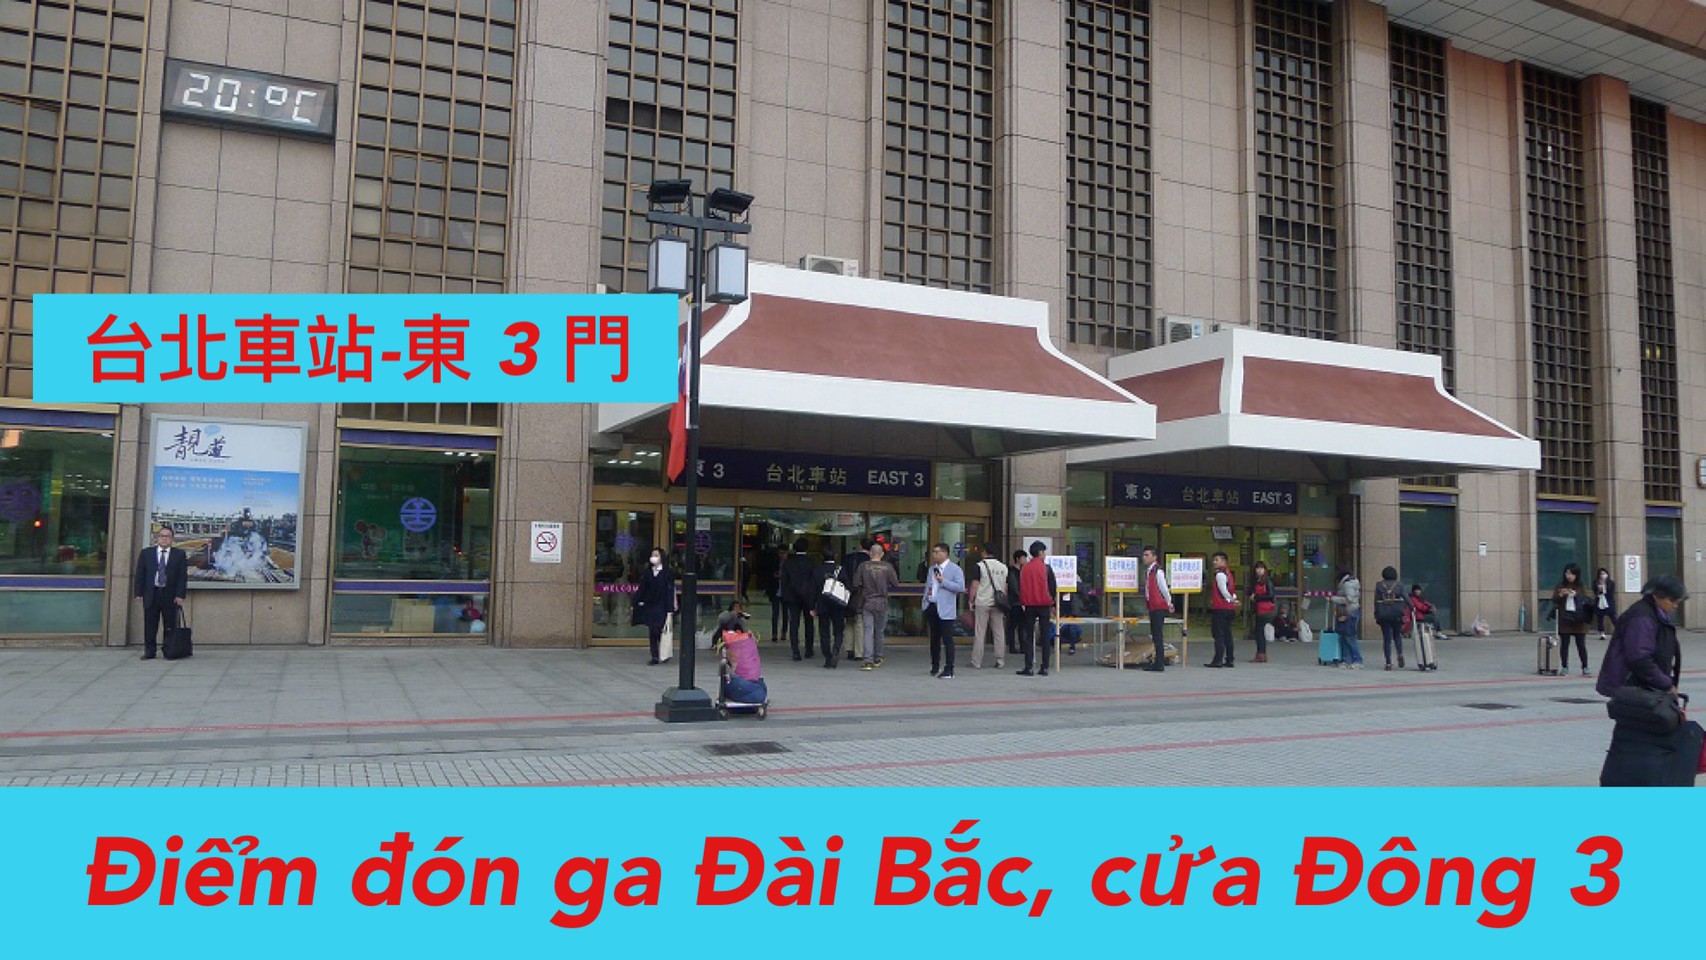  7:00 Đón ga Đài Bắc (East 3) /台北車站 